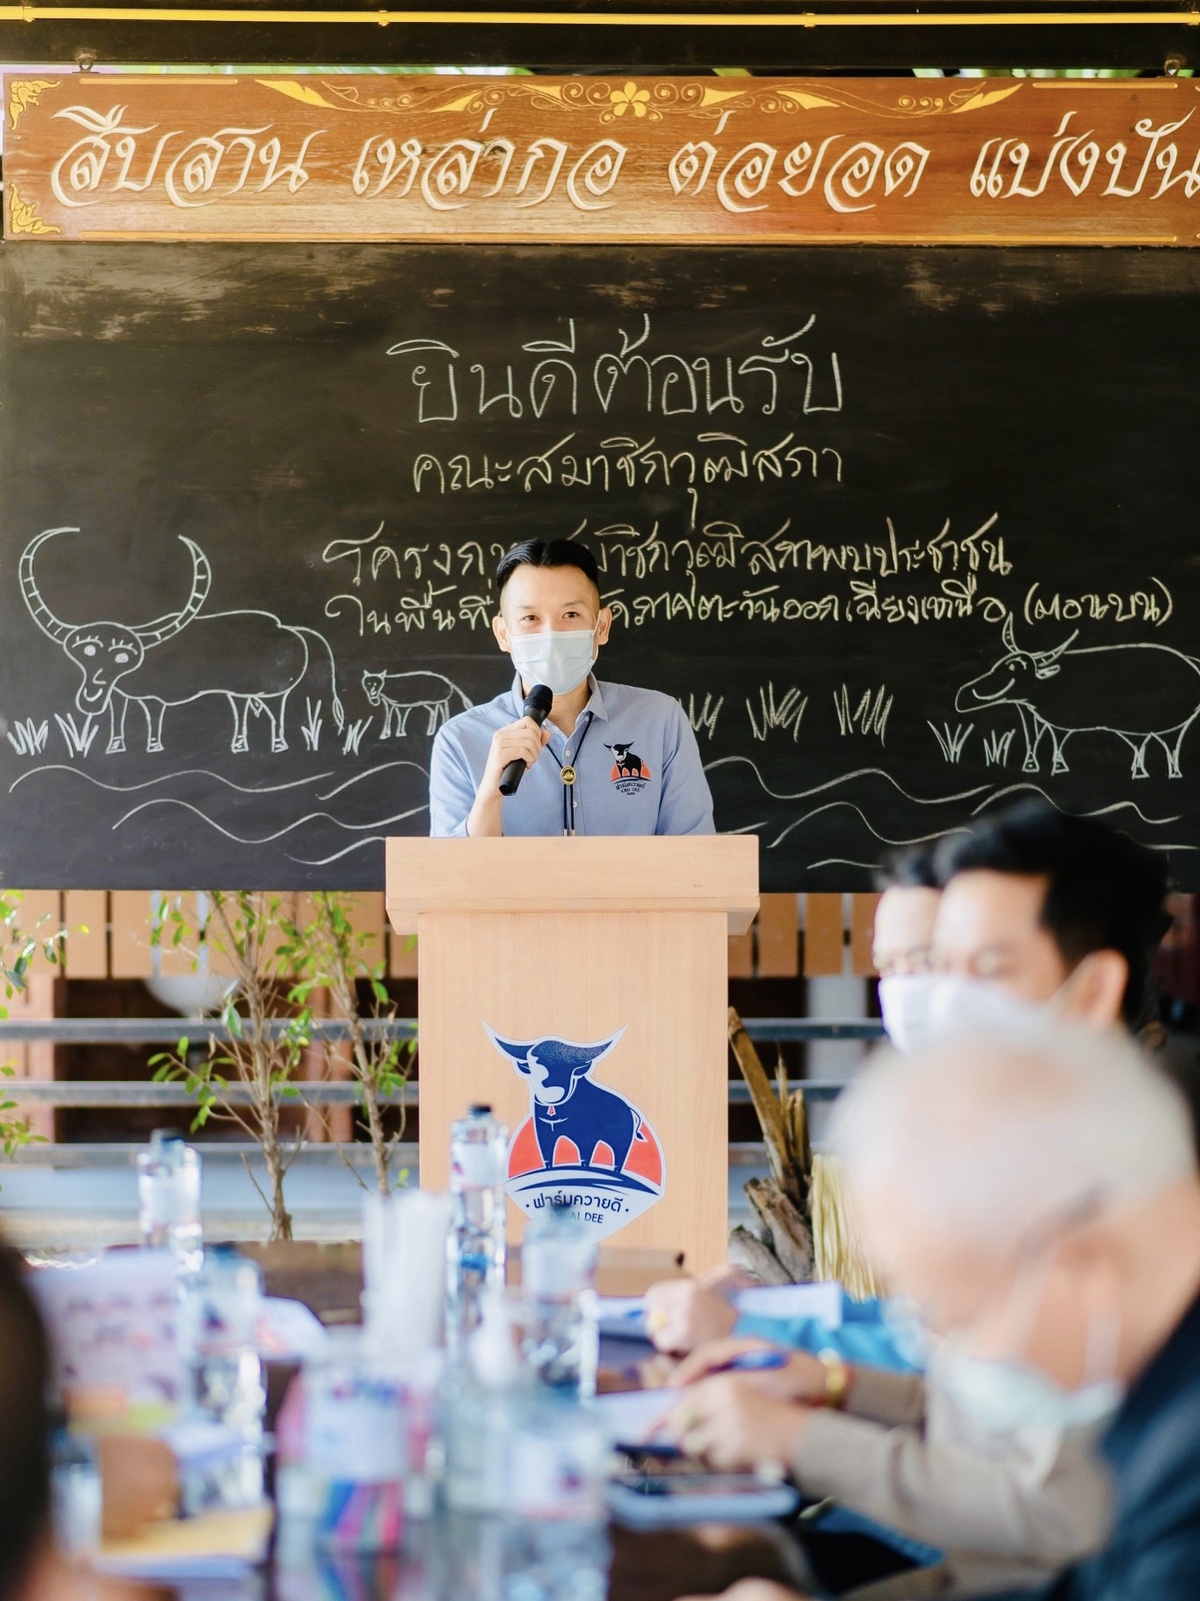 สมาชิกวุฒิสภา เยี่ยมชมพ่อพันธุ์ควายยักษ์แห่งเมืองร้อยเอ็ด พร้อมสนับสนุนการต่อยอดและพัฒนาควายไทย